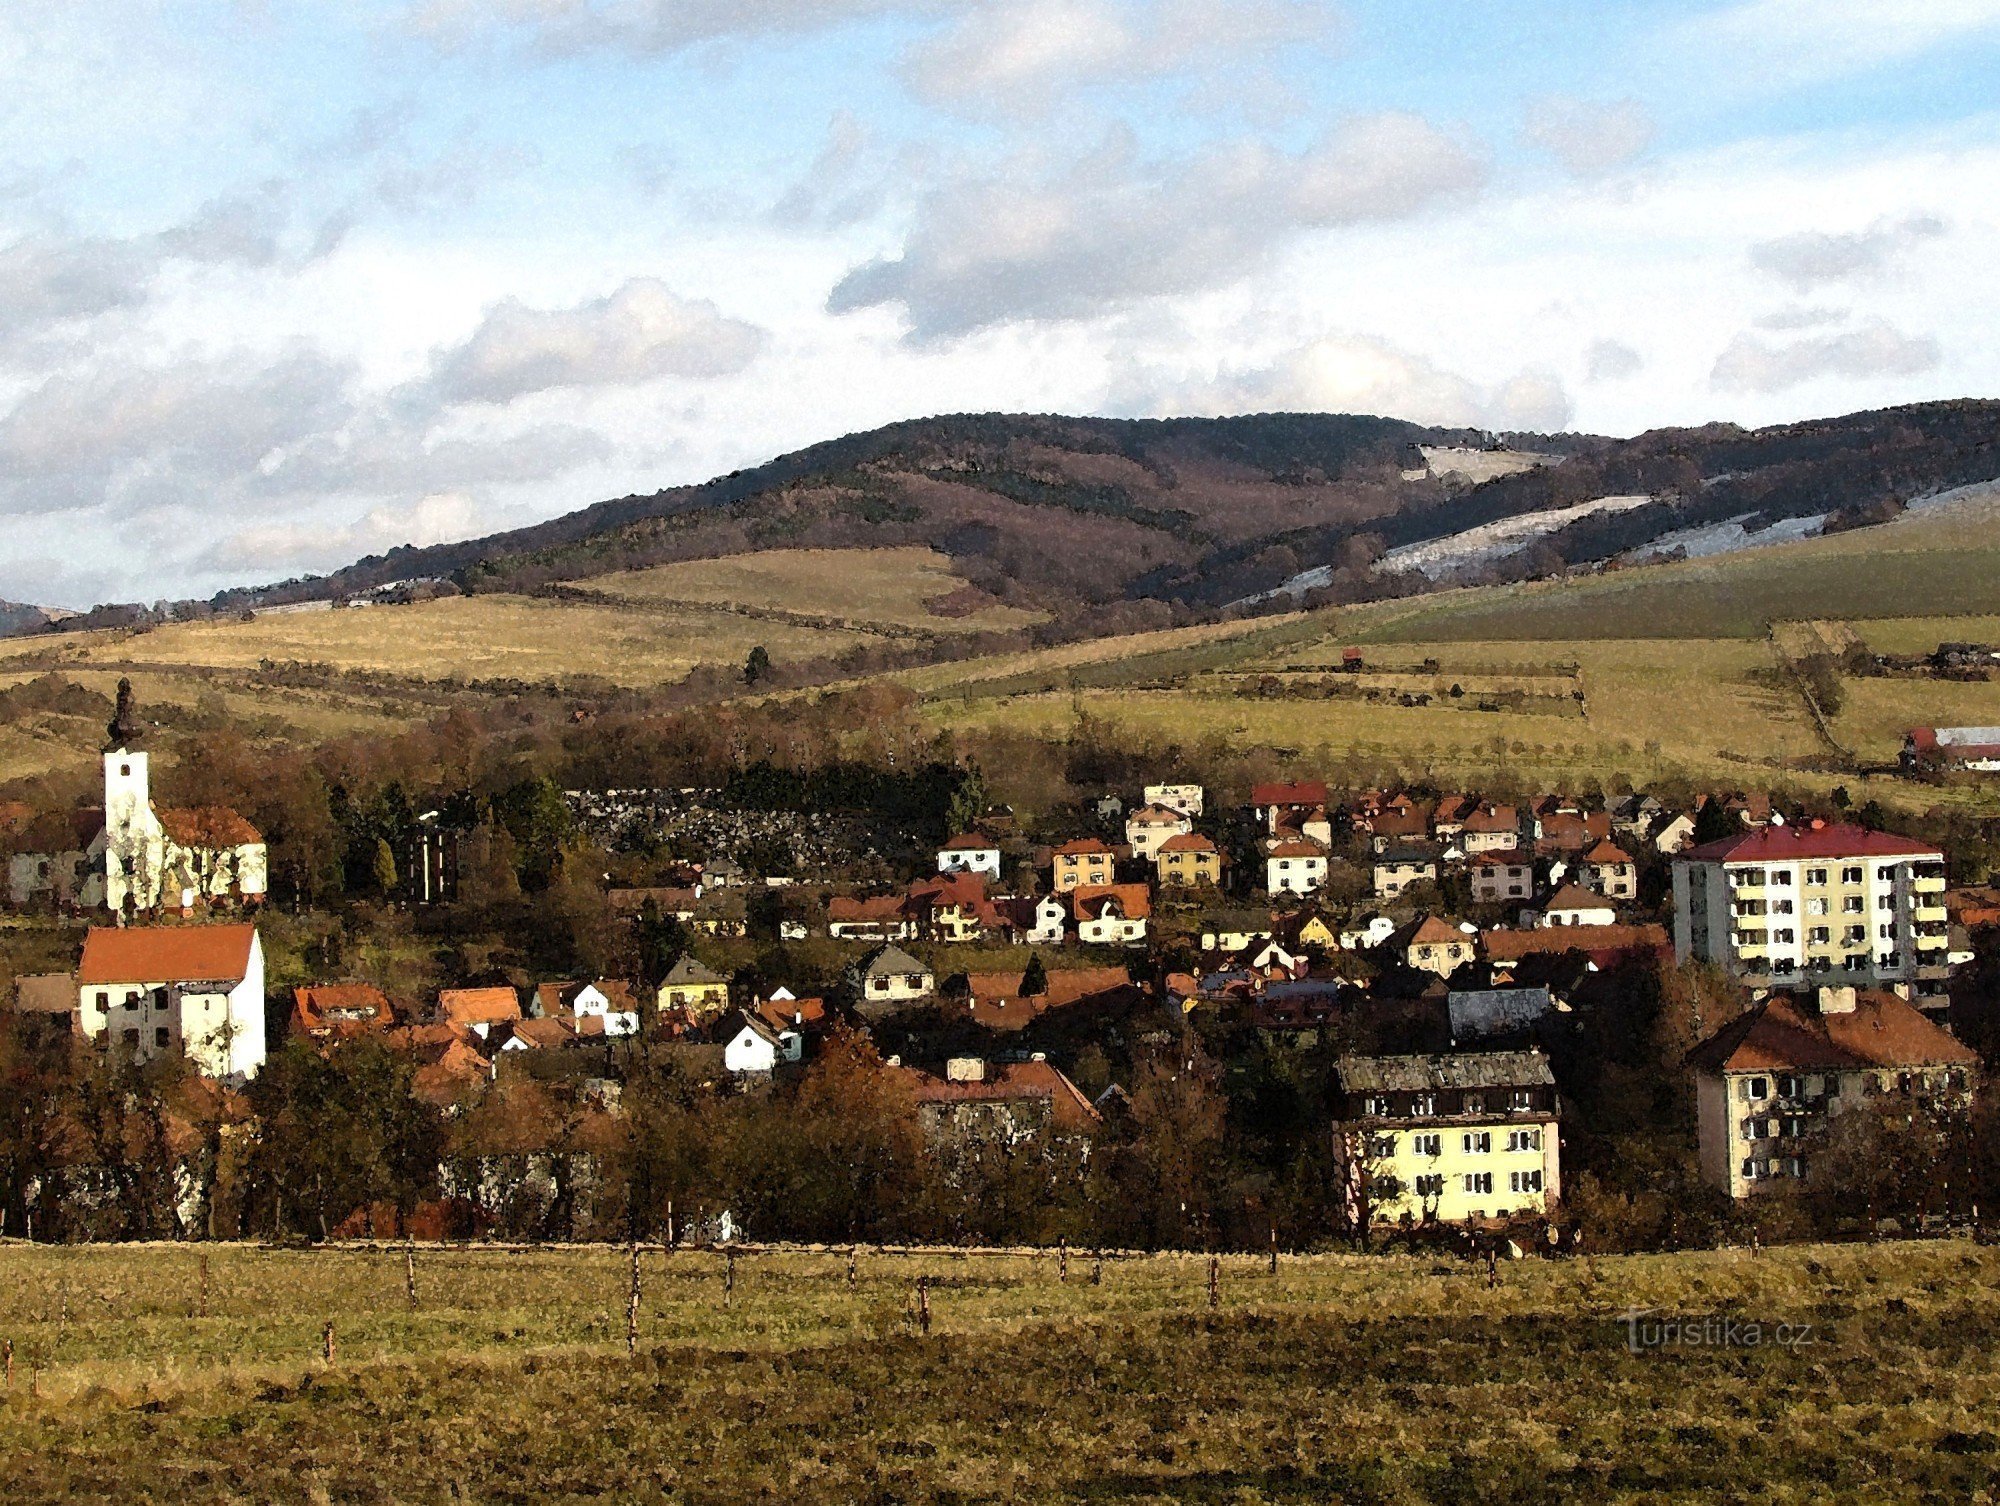 la ciudad de Brumov - Bylnice al fondo con Holý vrch